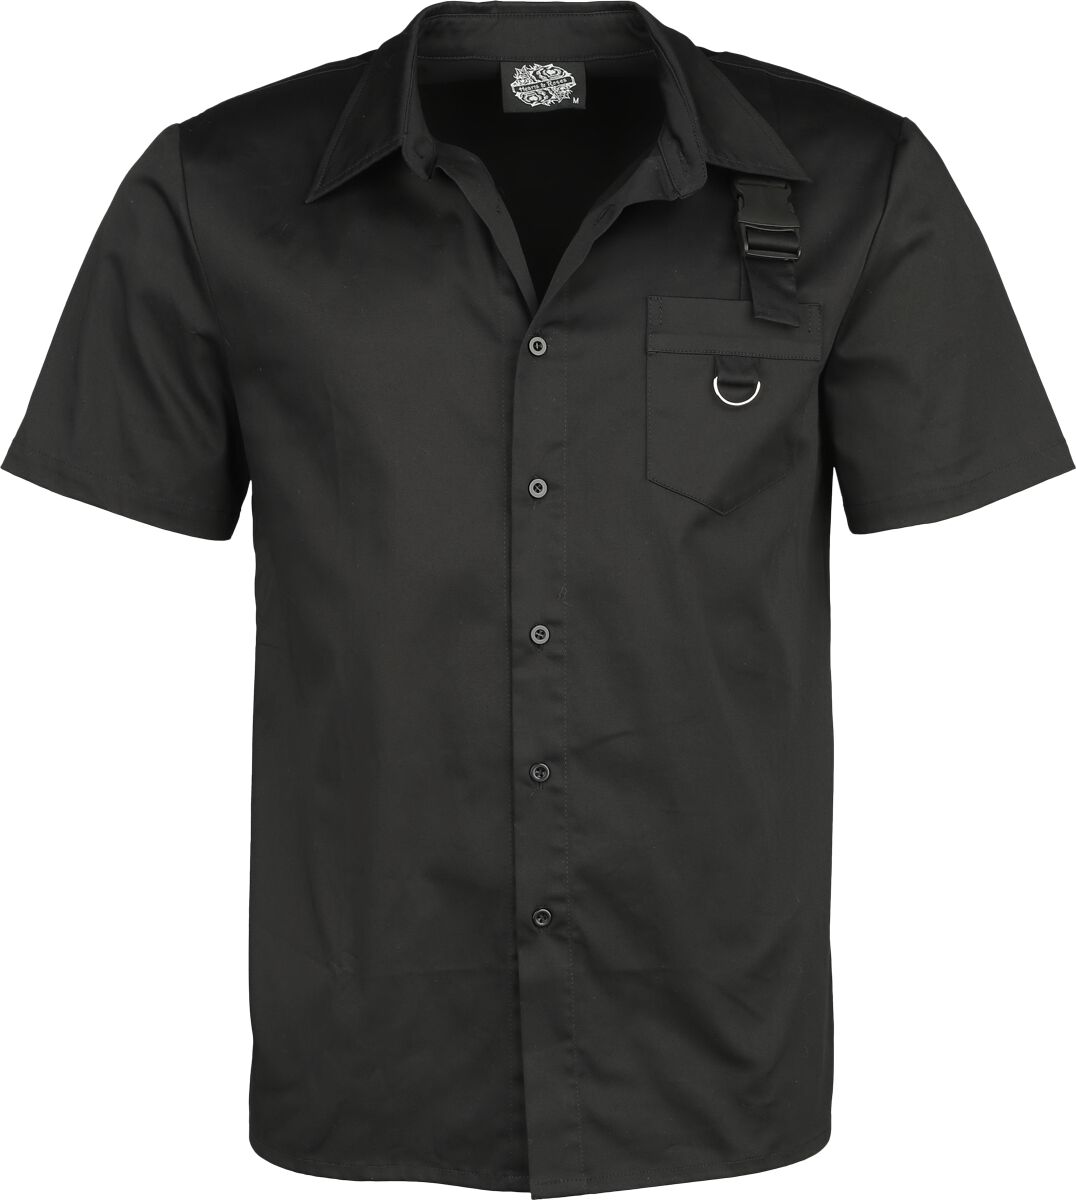 Image of Camicia Maniche Corte Gothic di H&R London - Black shirt - S a 4XL - Uomo - nero